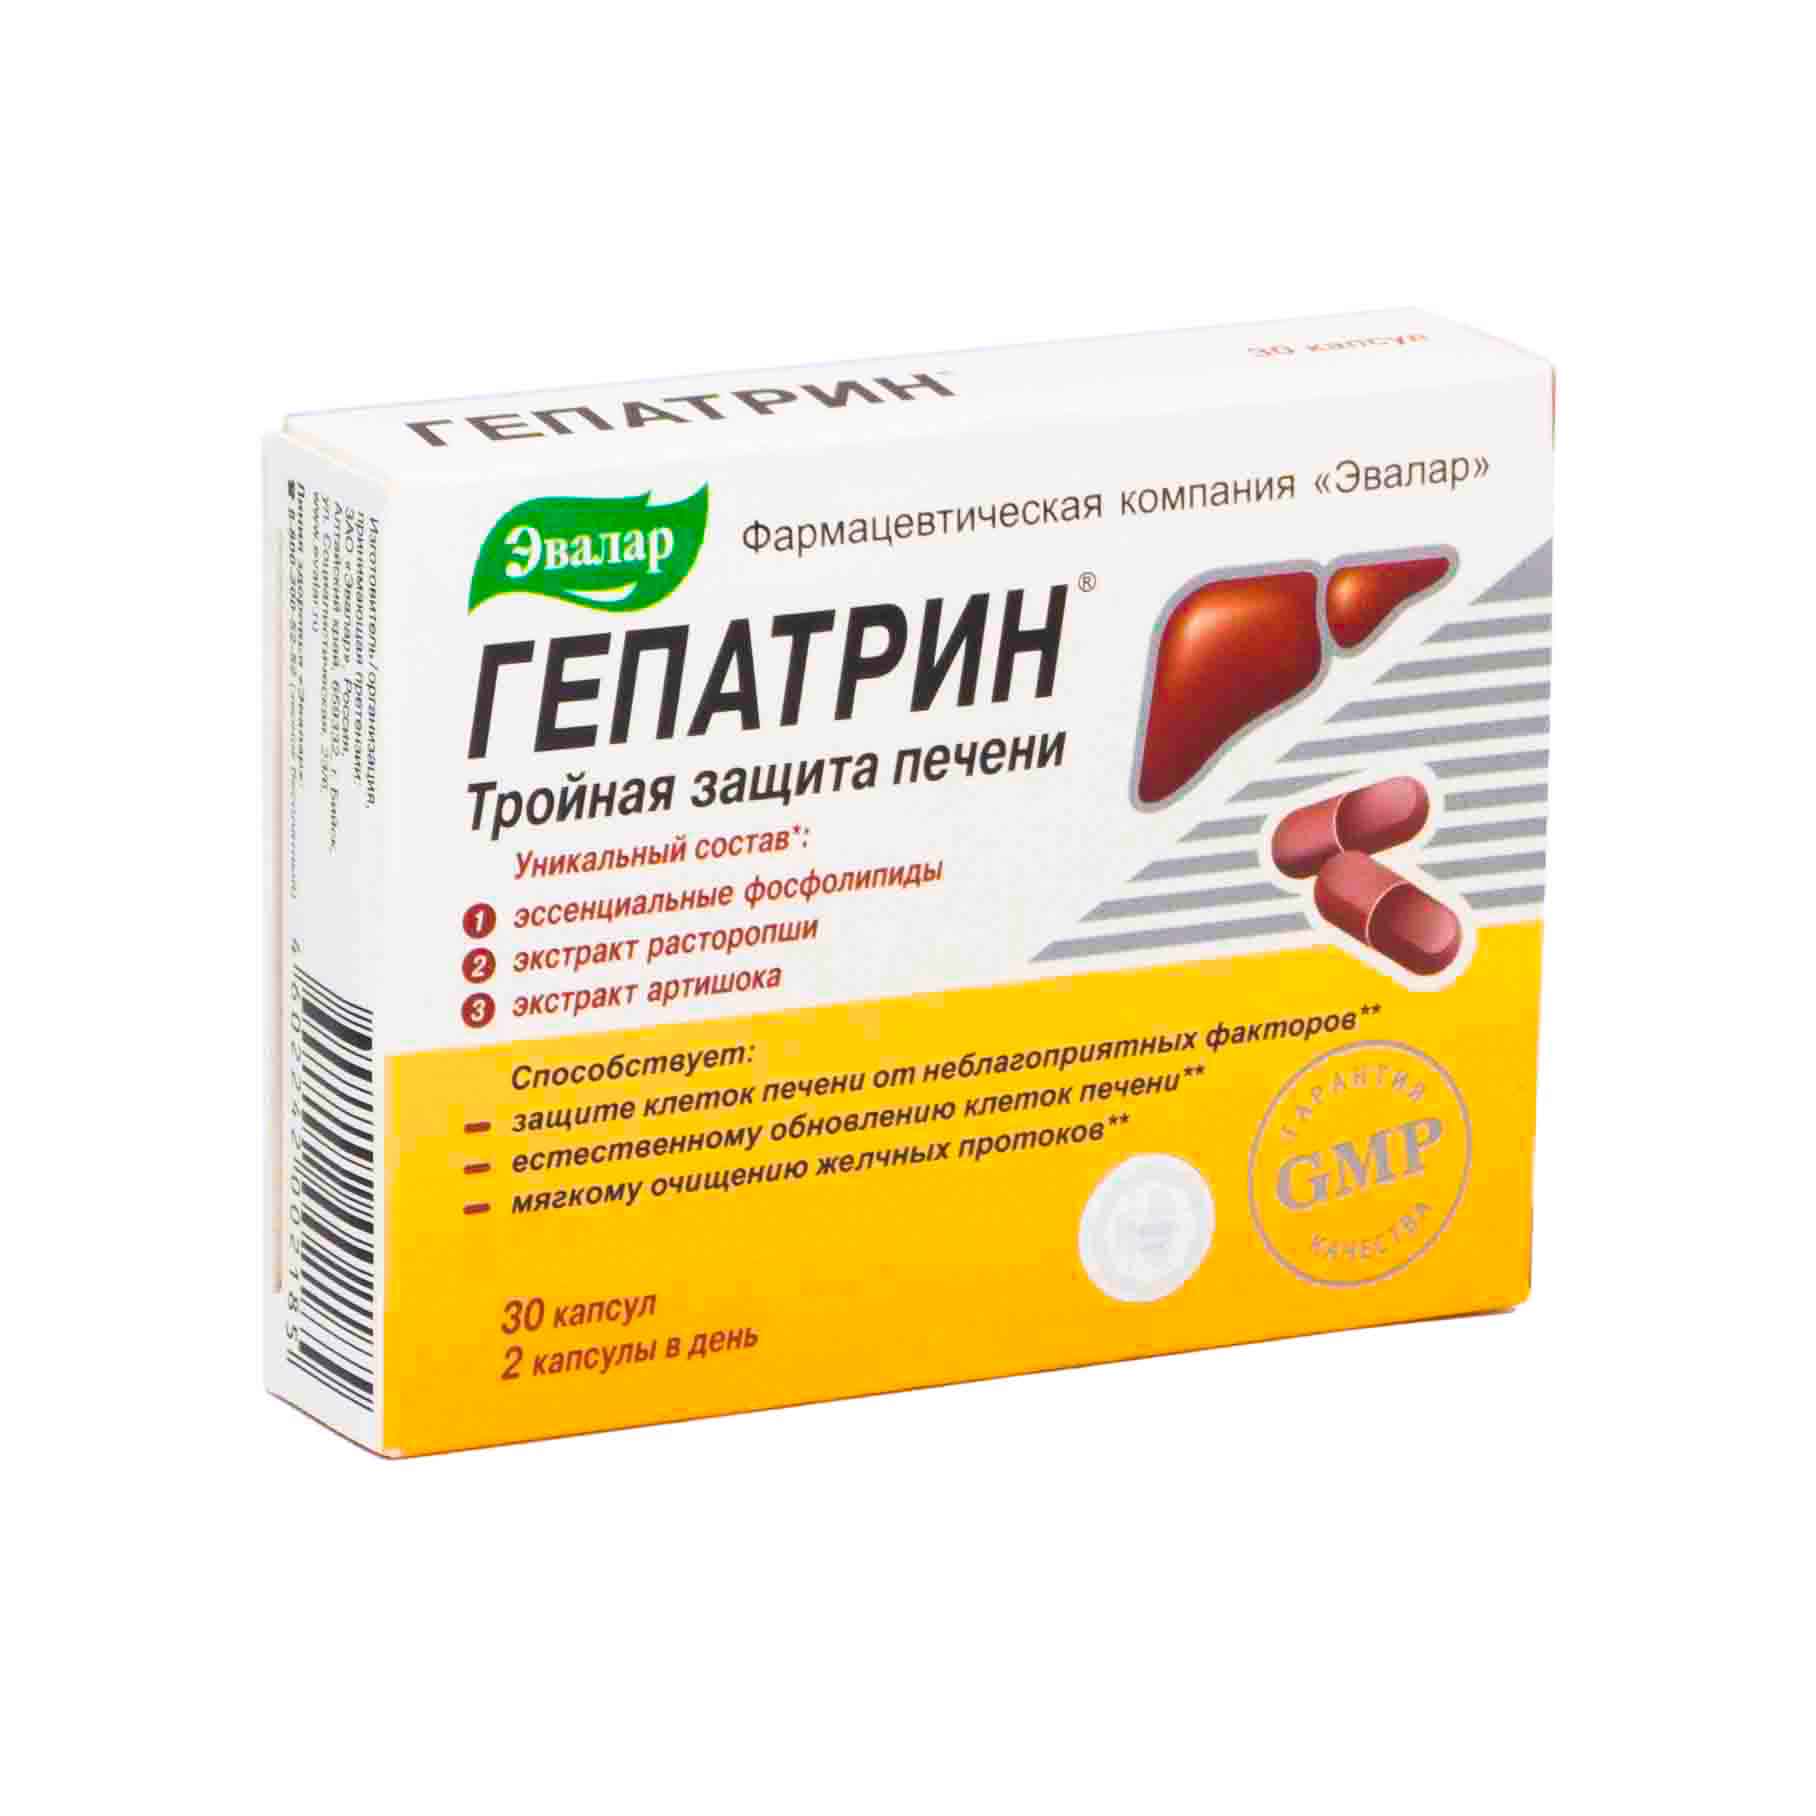 Гепатрин состав. Гепатрин 30 капсул. Гепатрин, капсулы 330 мг, 60 шт.. Эвалар от печени Гепатрин. Гепатрин детокс Эвалар.